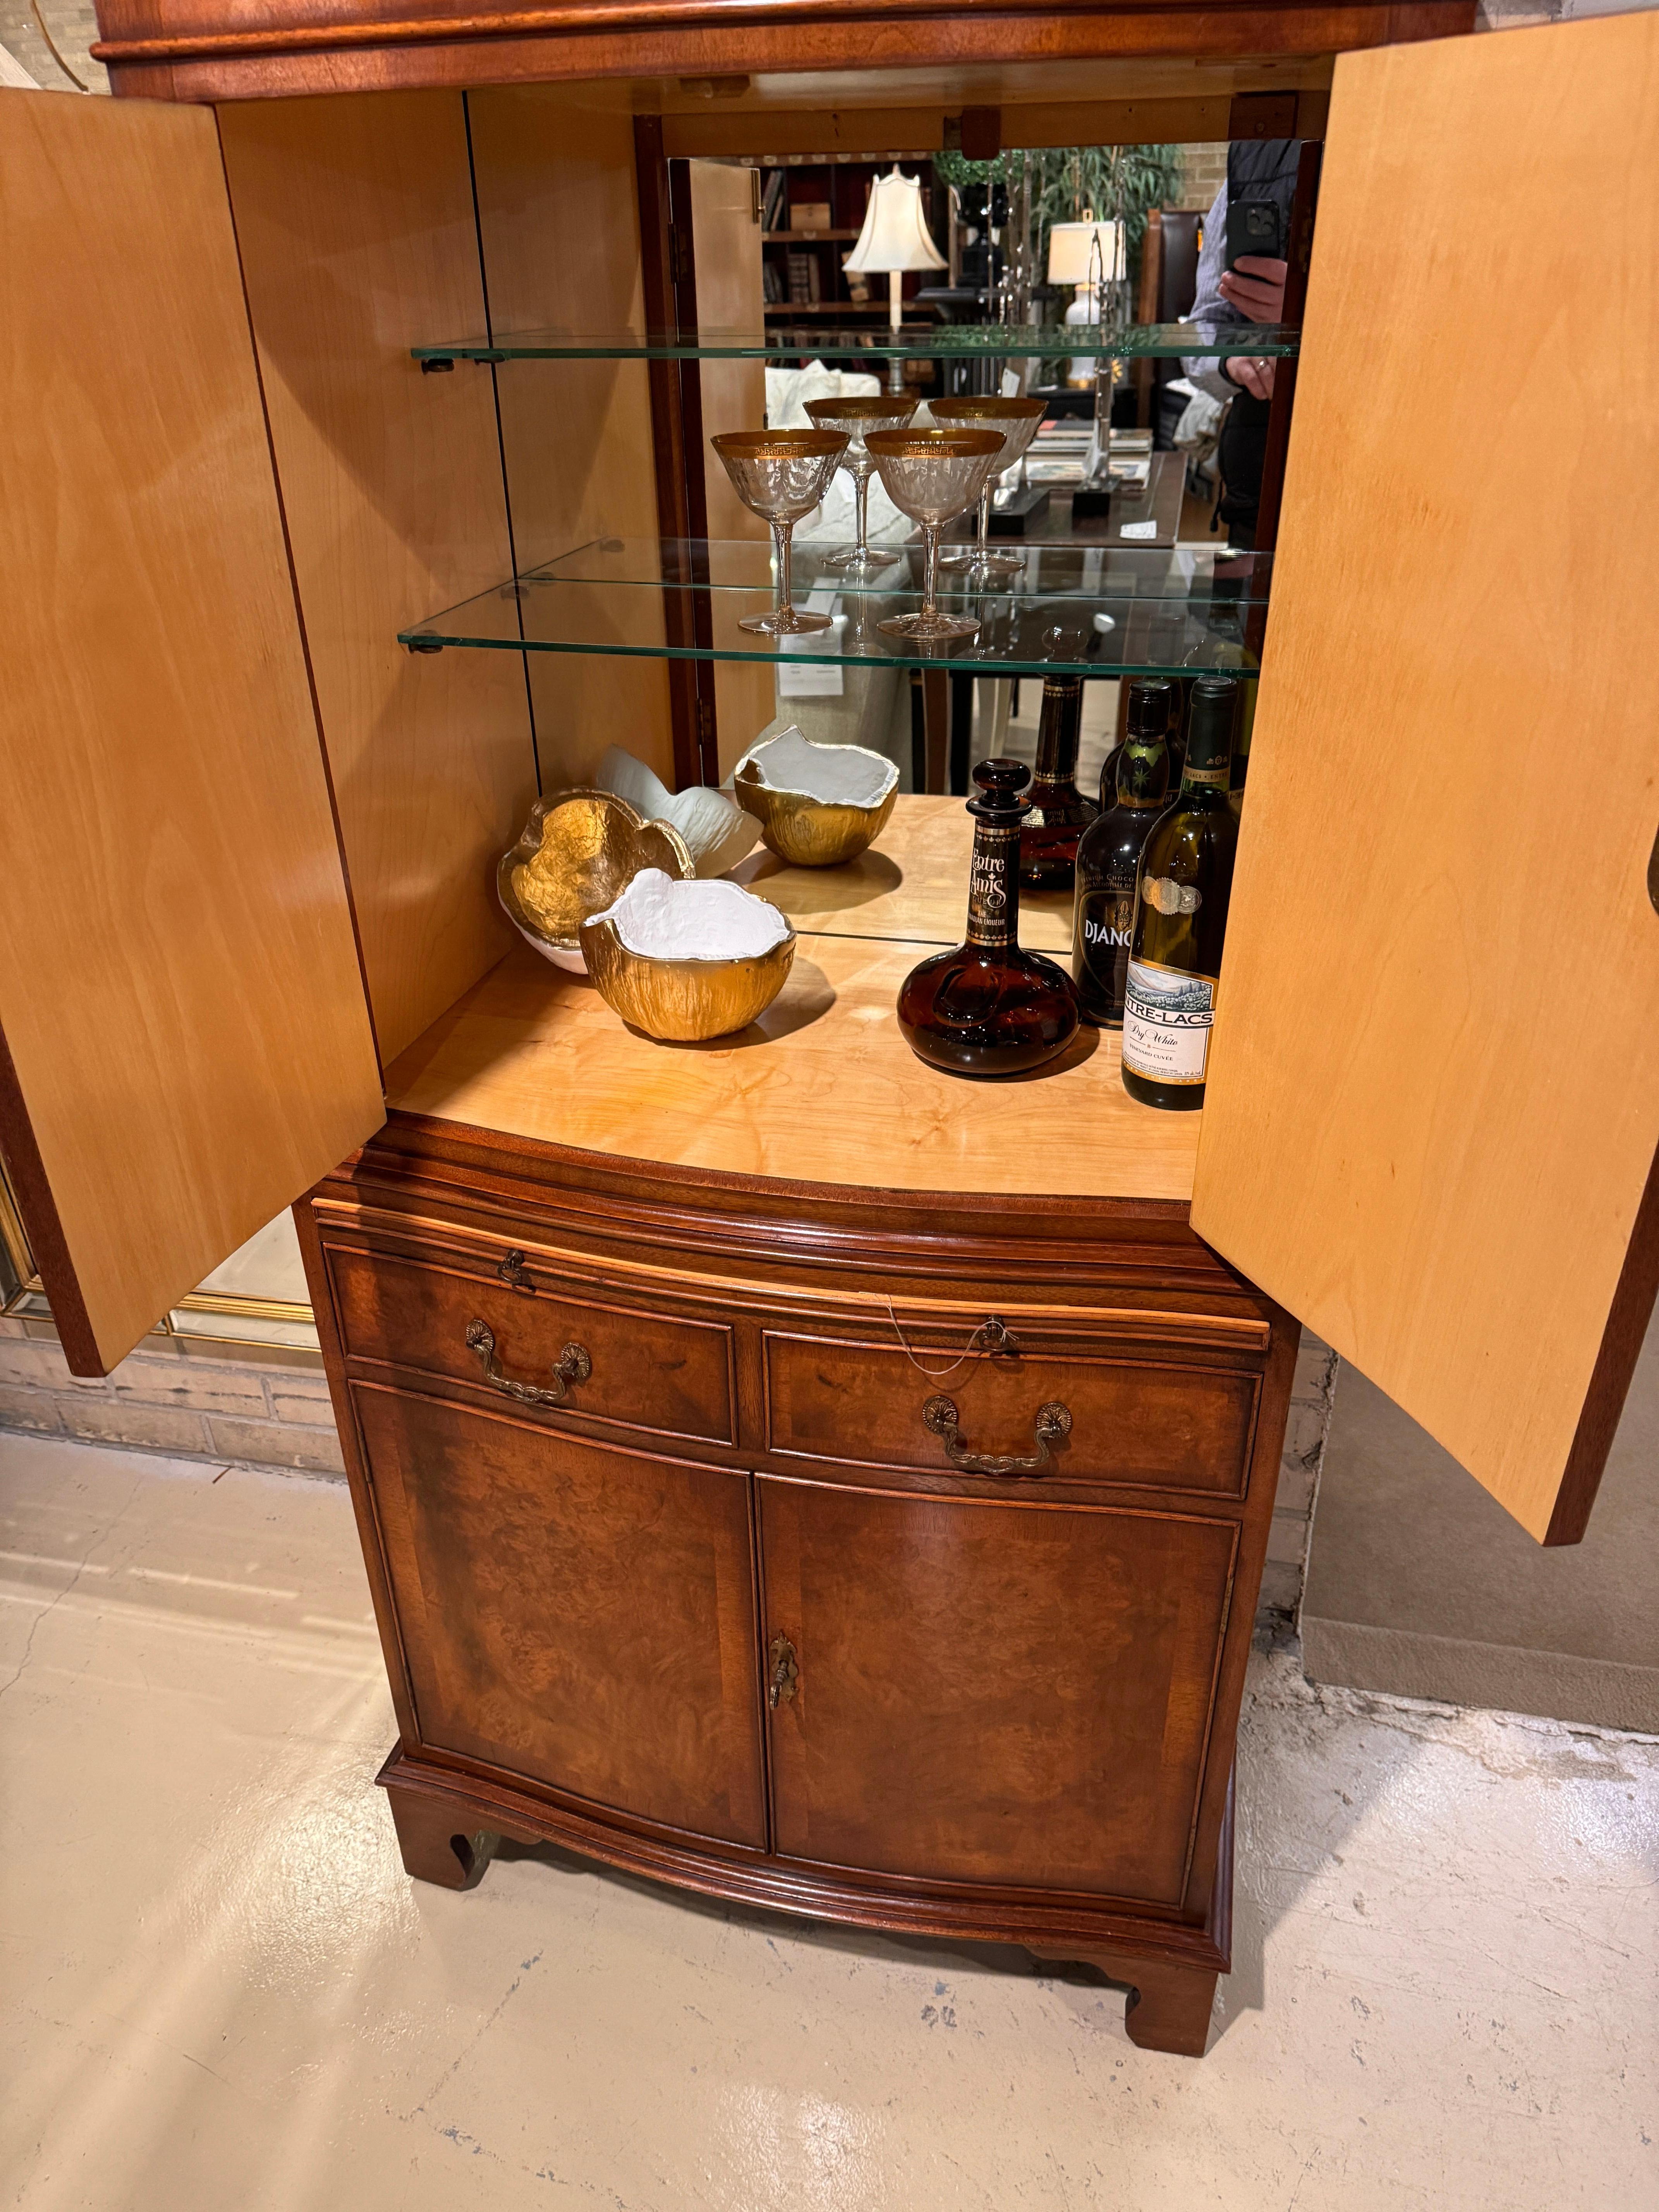 Il s'agit d'un exemple absolument fantastique d'une armoire à boissons ou d'un bar sec de style XVIIIe siècle, fabriqué en Angleterre avec une attention méticuleuse aux détails.  L'armoire est en noyer massif et plaqué, avec des placages de ronce de